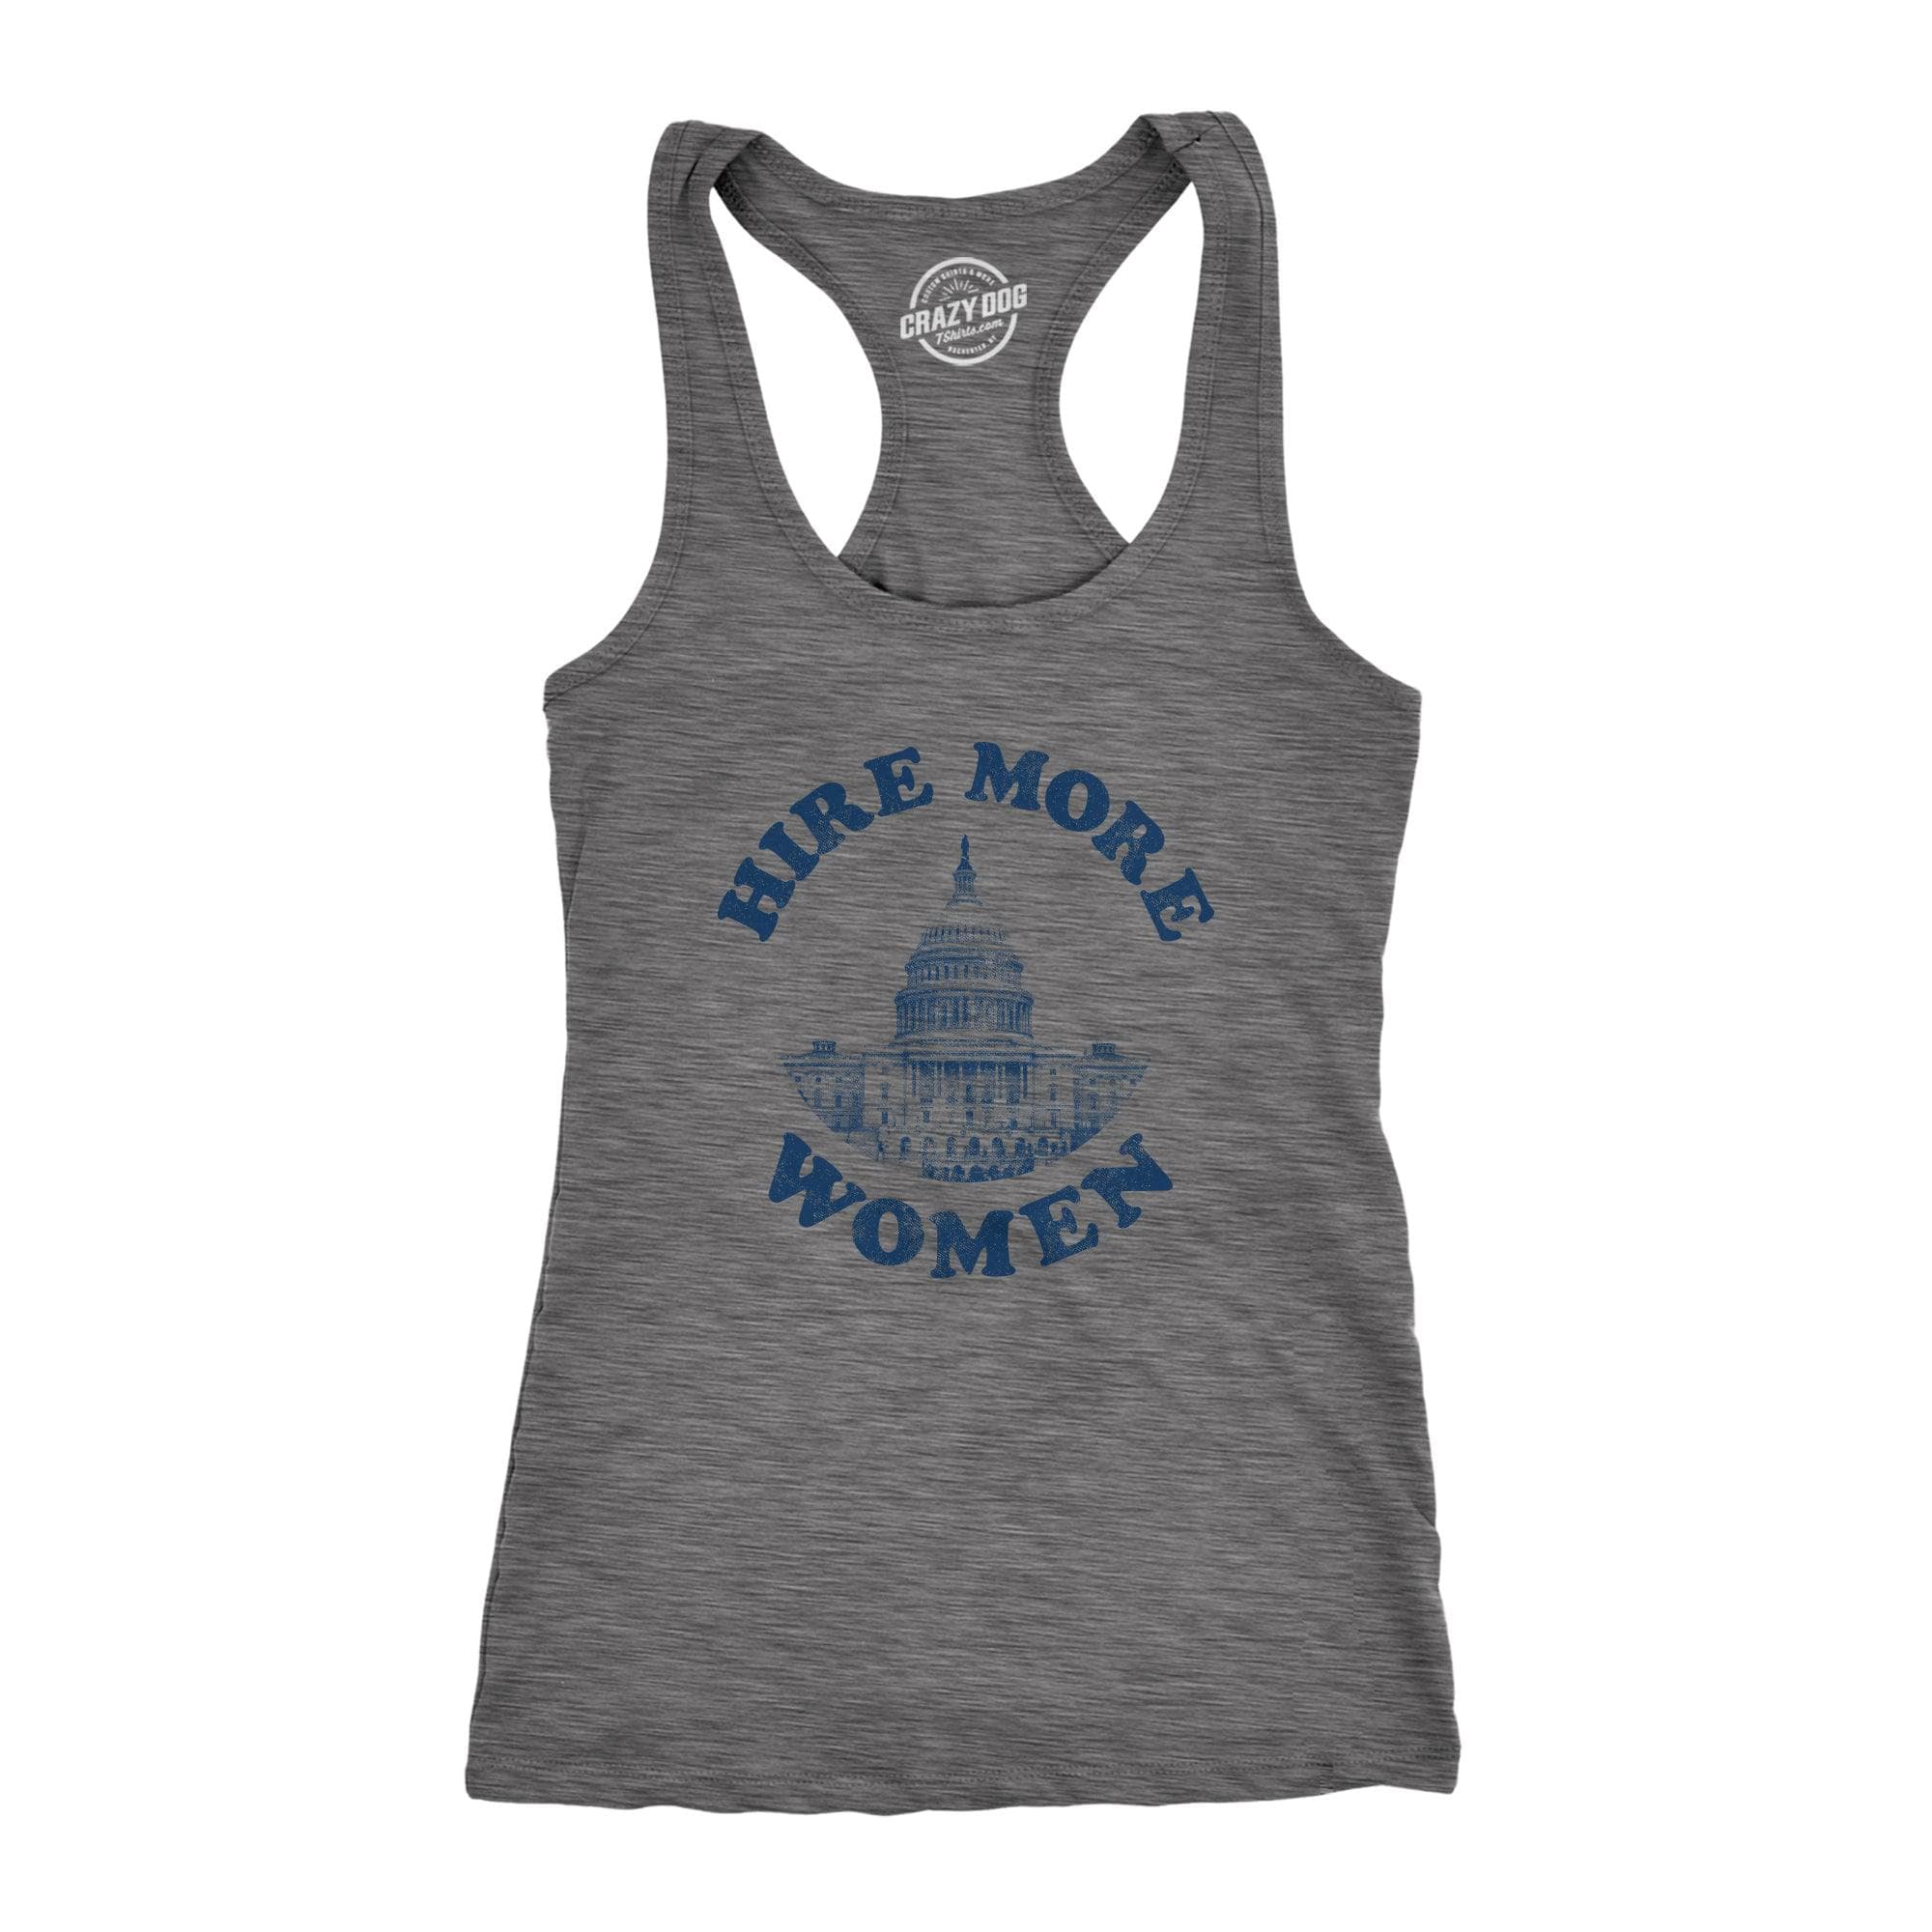 Hire More Women Women's Tank Top  -  Crazy Dog T-Shirts